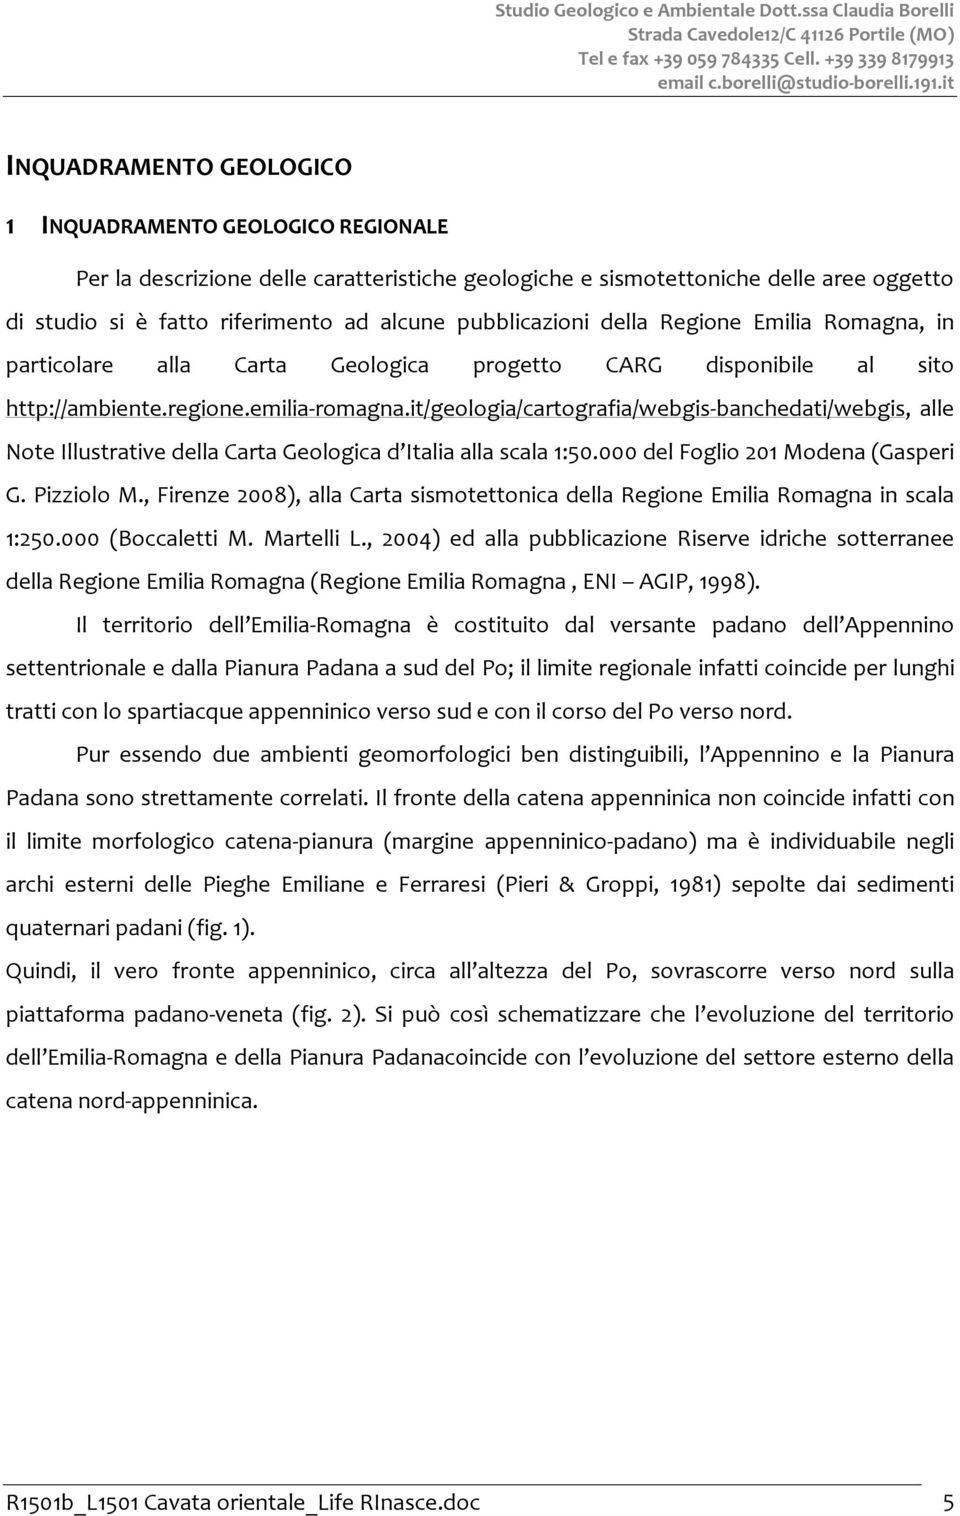 pubblicazioni della Regione Emilia Romagna, in particolare alla Carta Geologica progetto CARG disponibile al sito http://ambiente.regione.emilia-romagna.